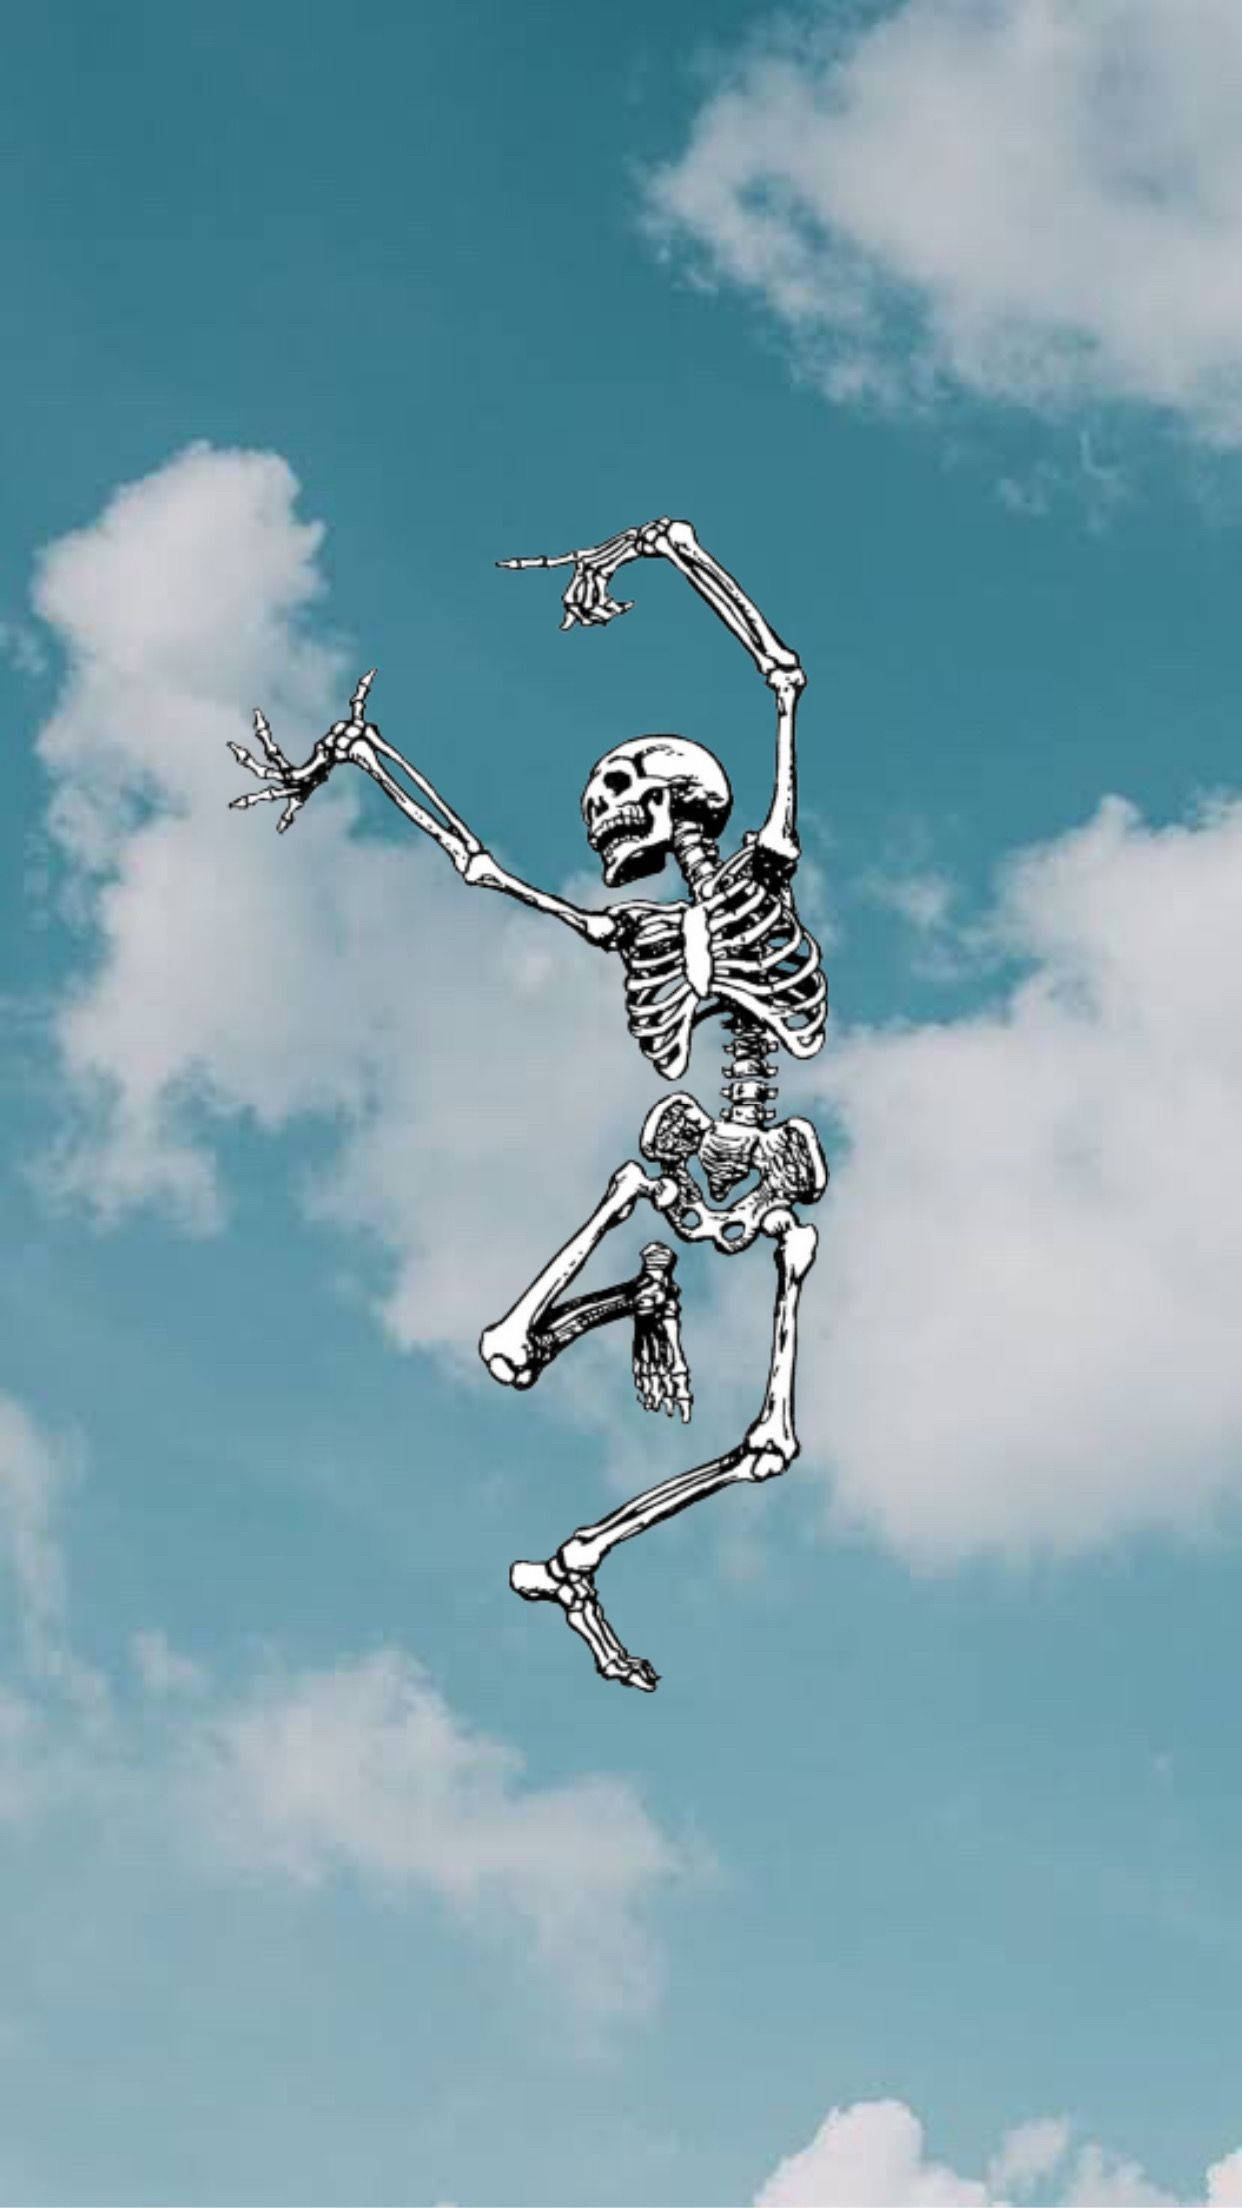 Free Skeleton Wallpaper Downloads, [400+] Skeleton Wallpapers for FREE |  